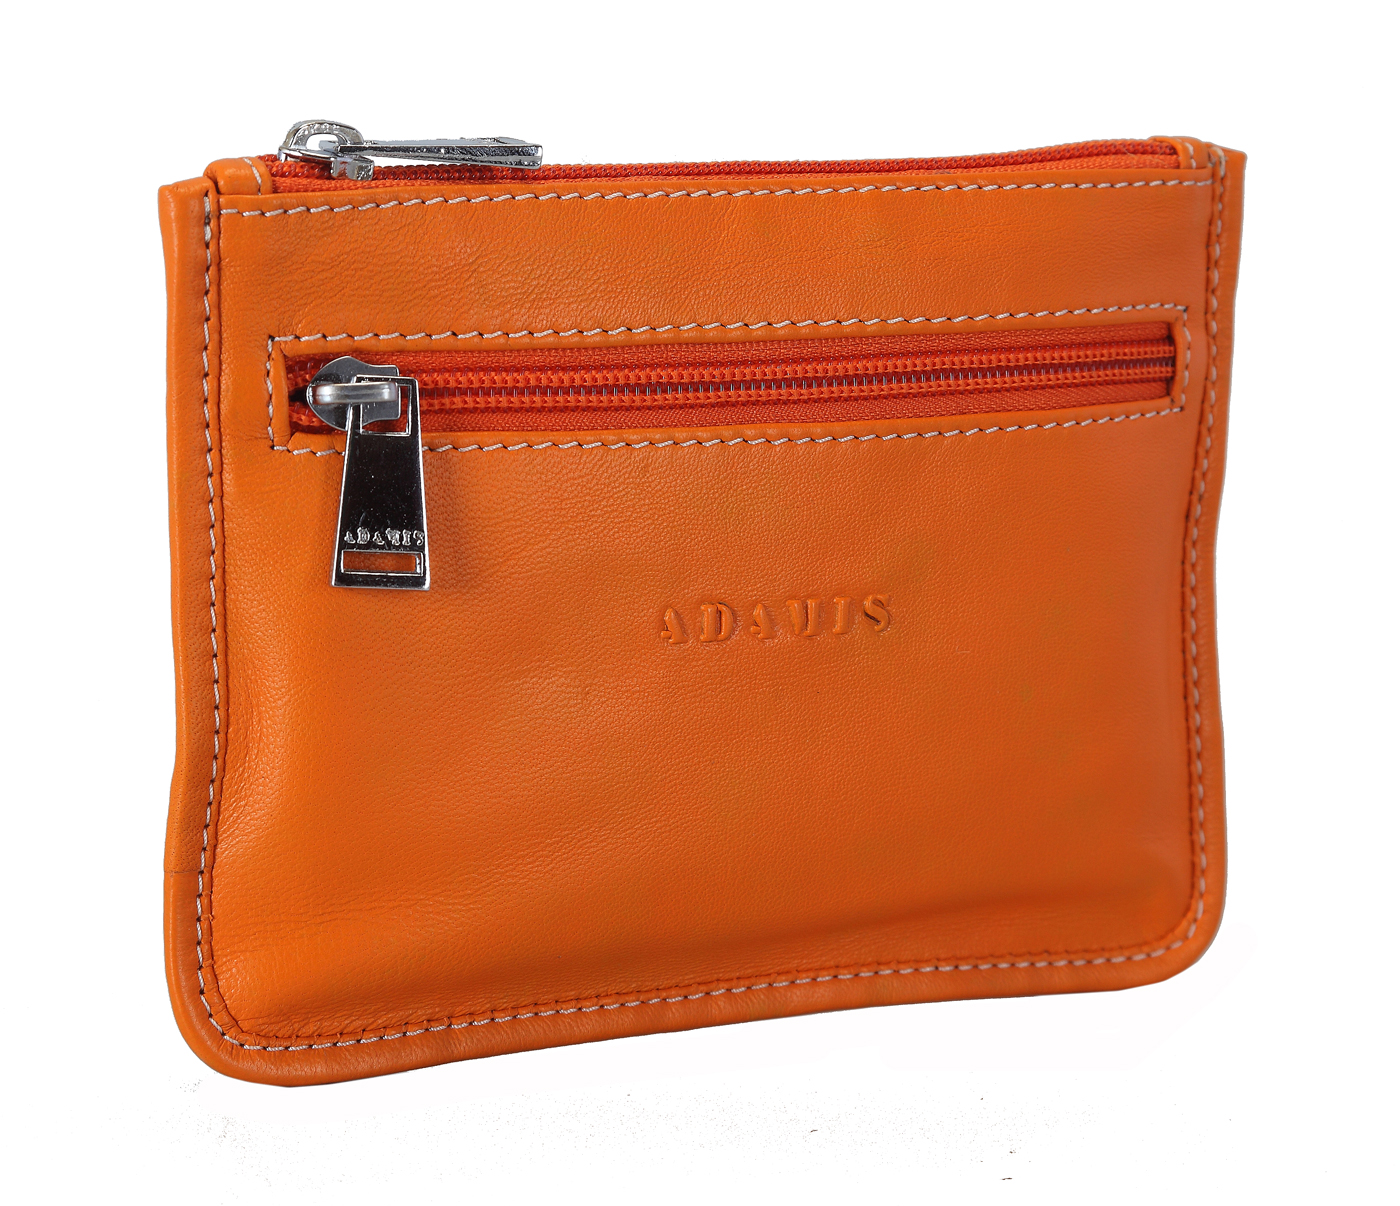 W228--Unisex multi purpose pouch in Genuine Leather - Orange